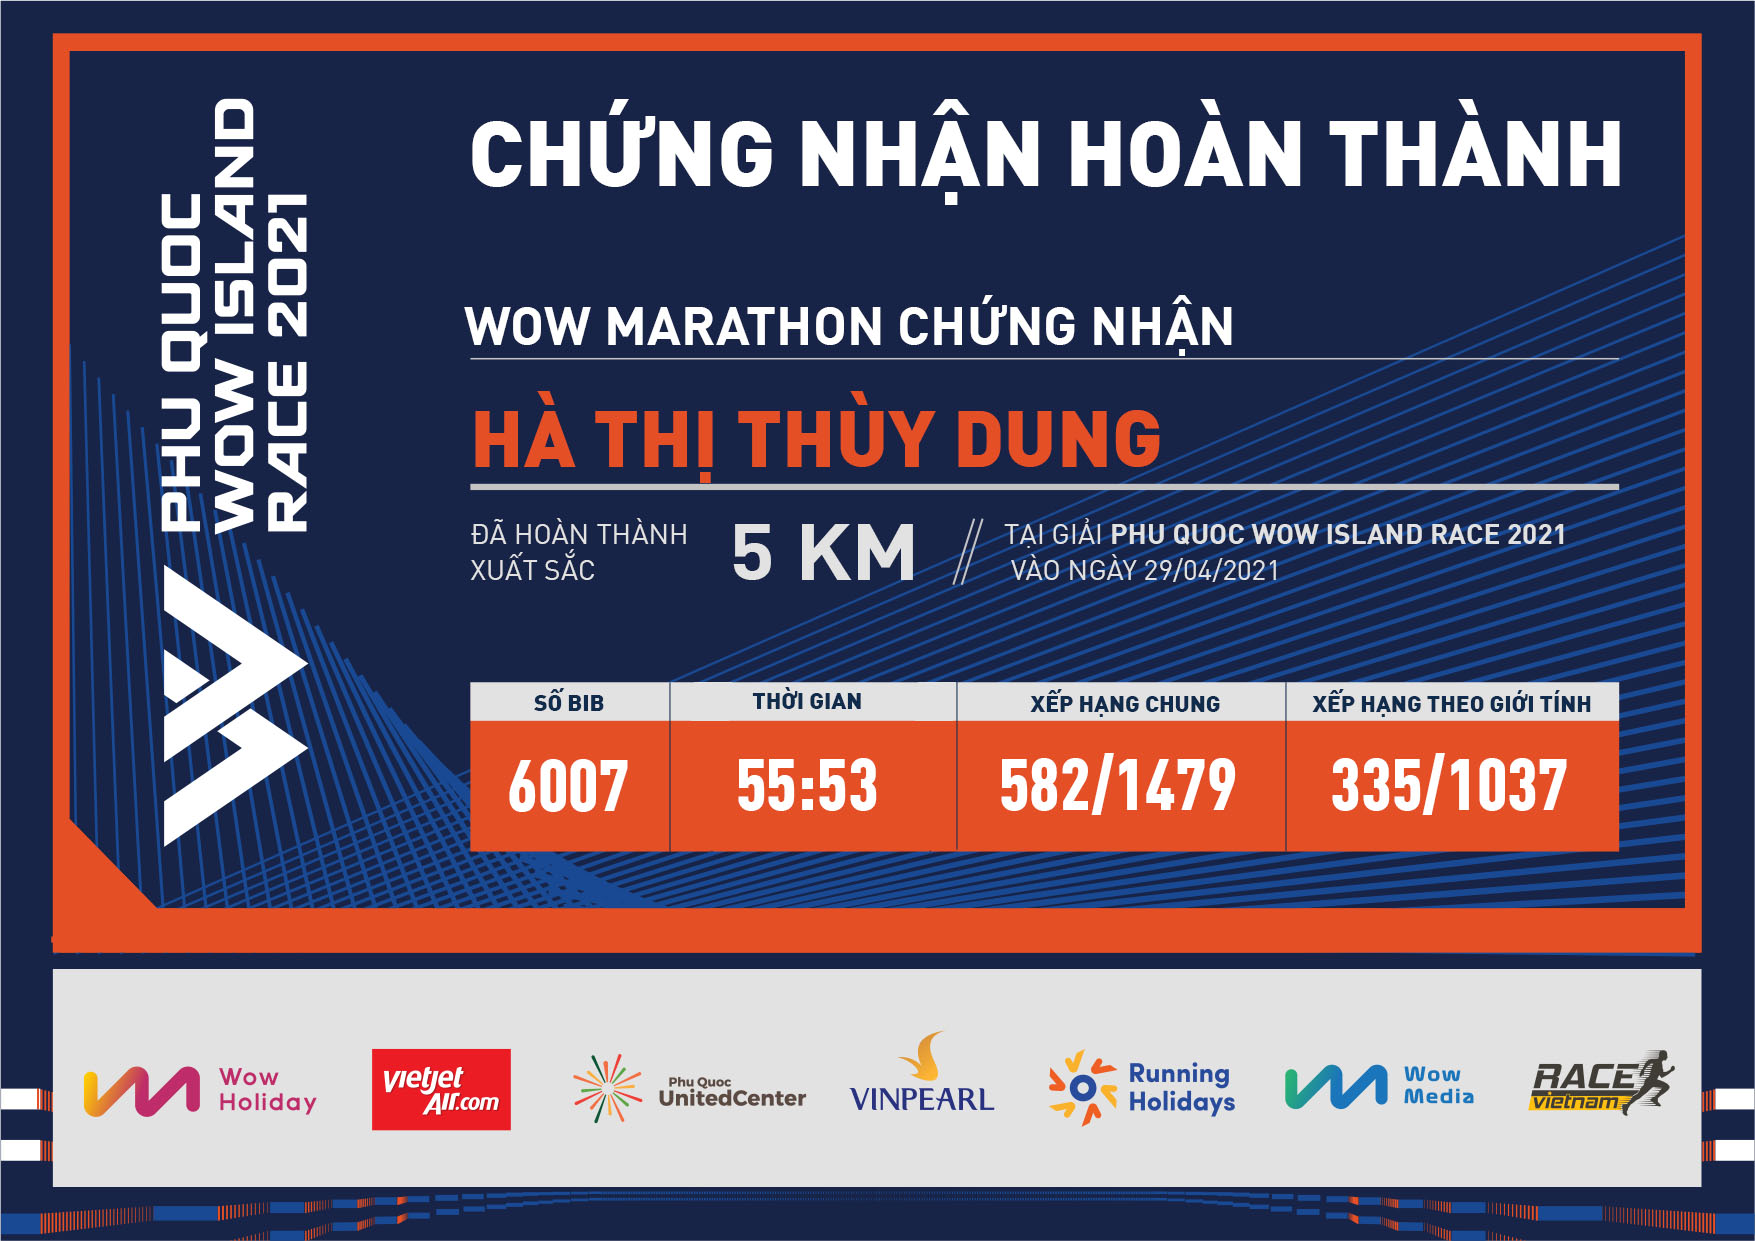 6007 - Hà Thị Thùy Dung